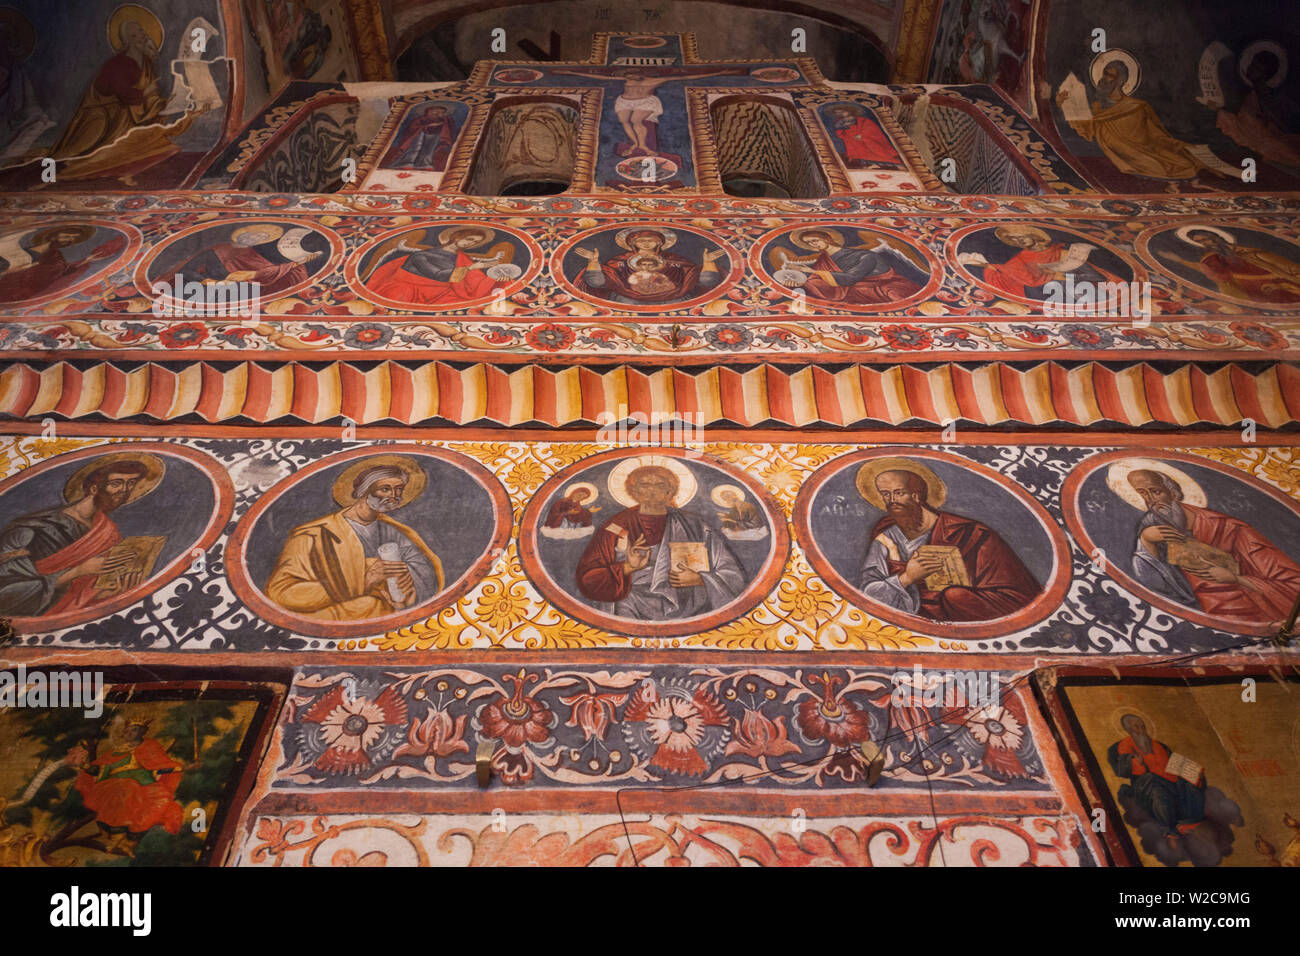 Roumanie, Bucarest-zone, Snagov, Monastère de Snagov, dernière demeure de Vlad Tepes, Vlad l'empaleur, fresques de l'intérieur Banque D'Images